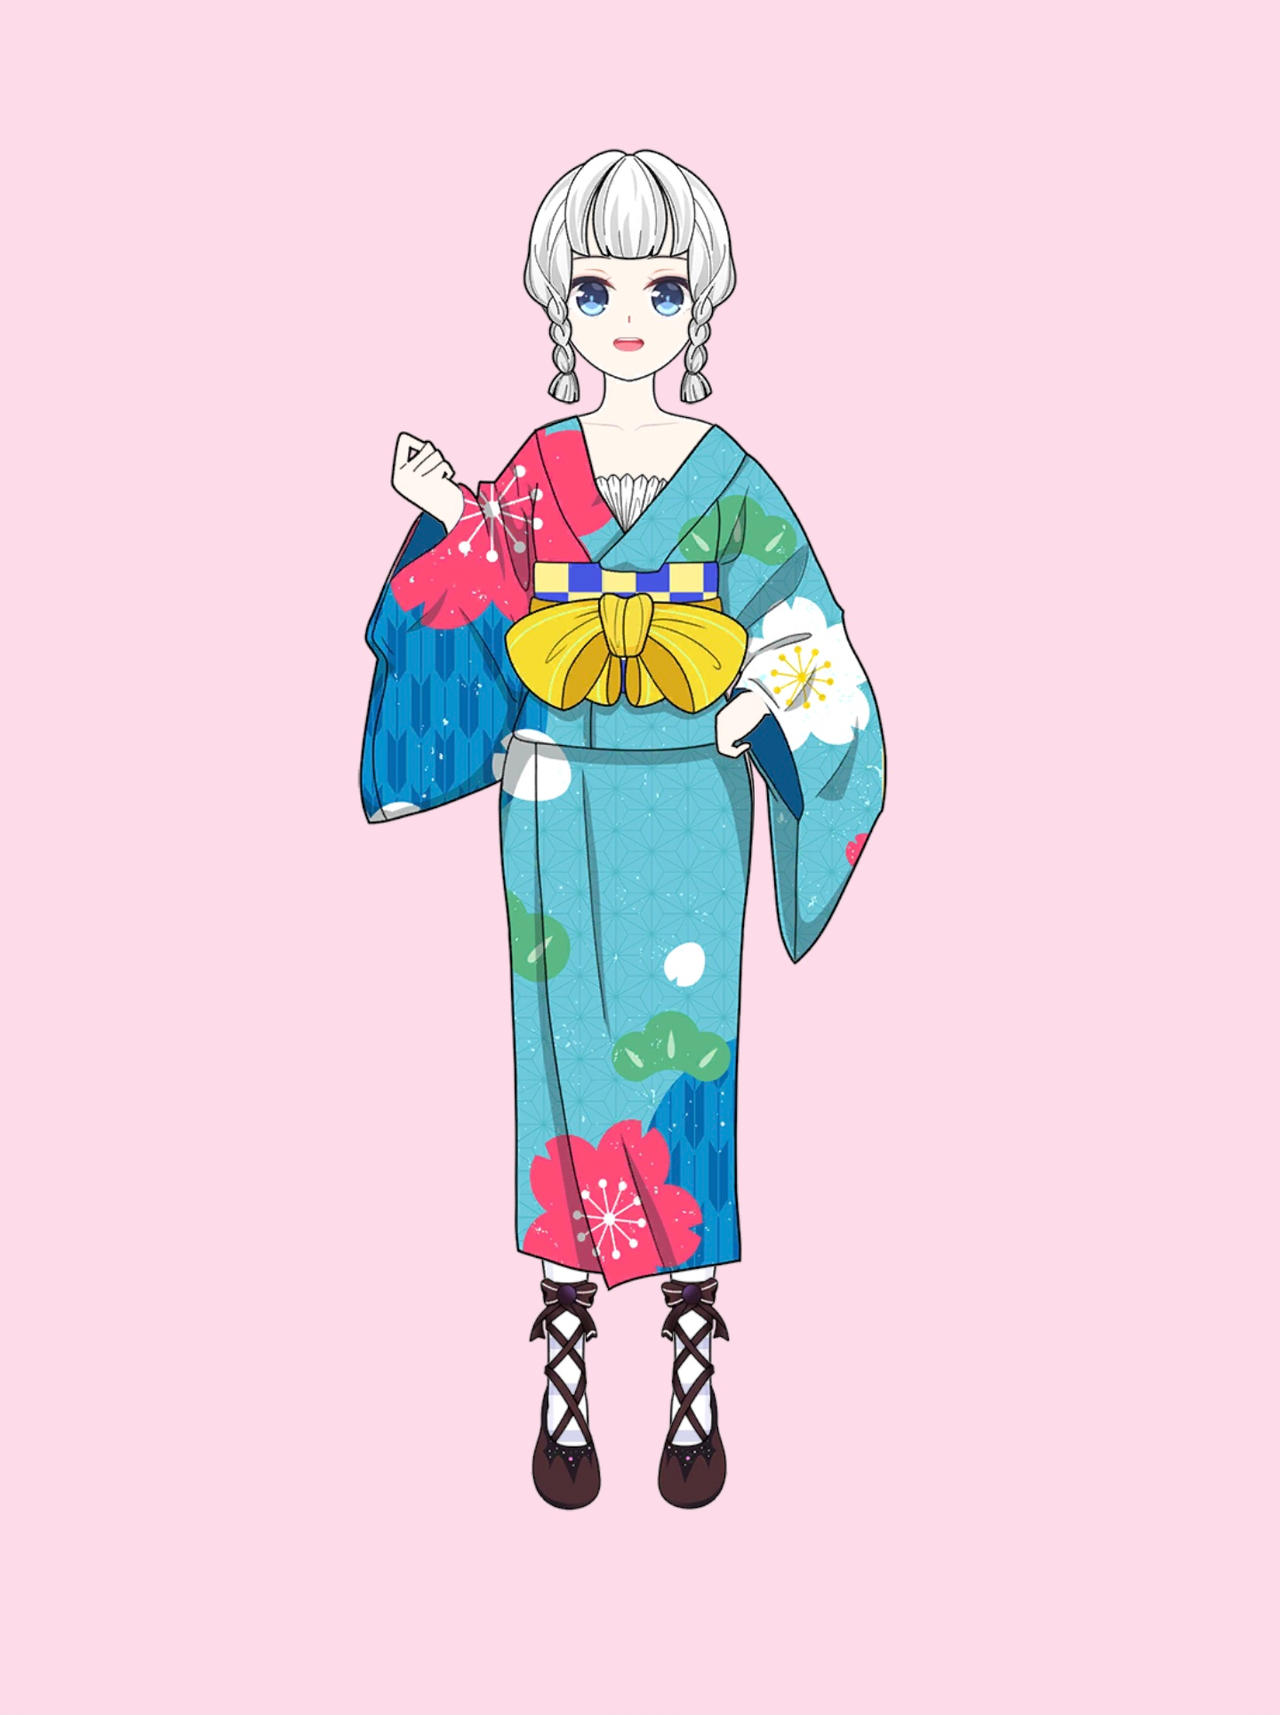 Anime Girl Dress Up Kimono by Quinster1999 on DeviantArt